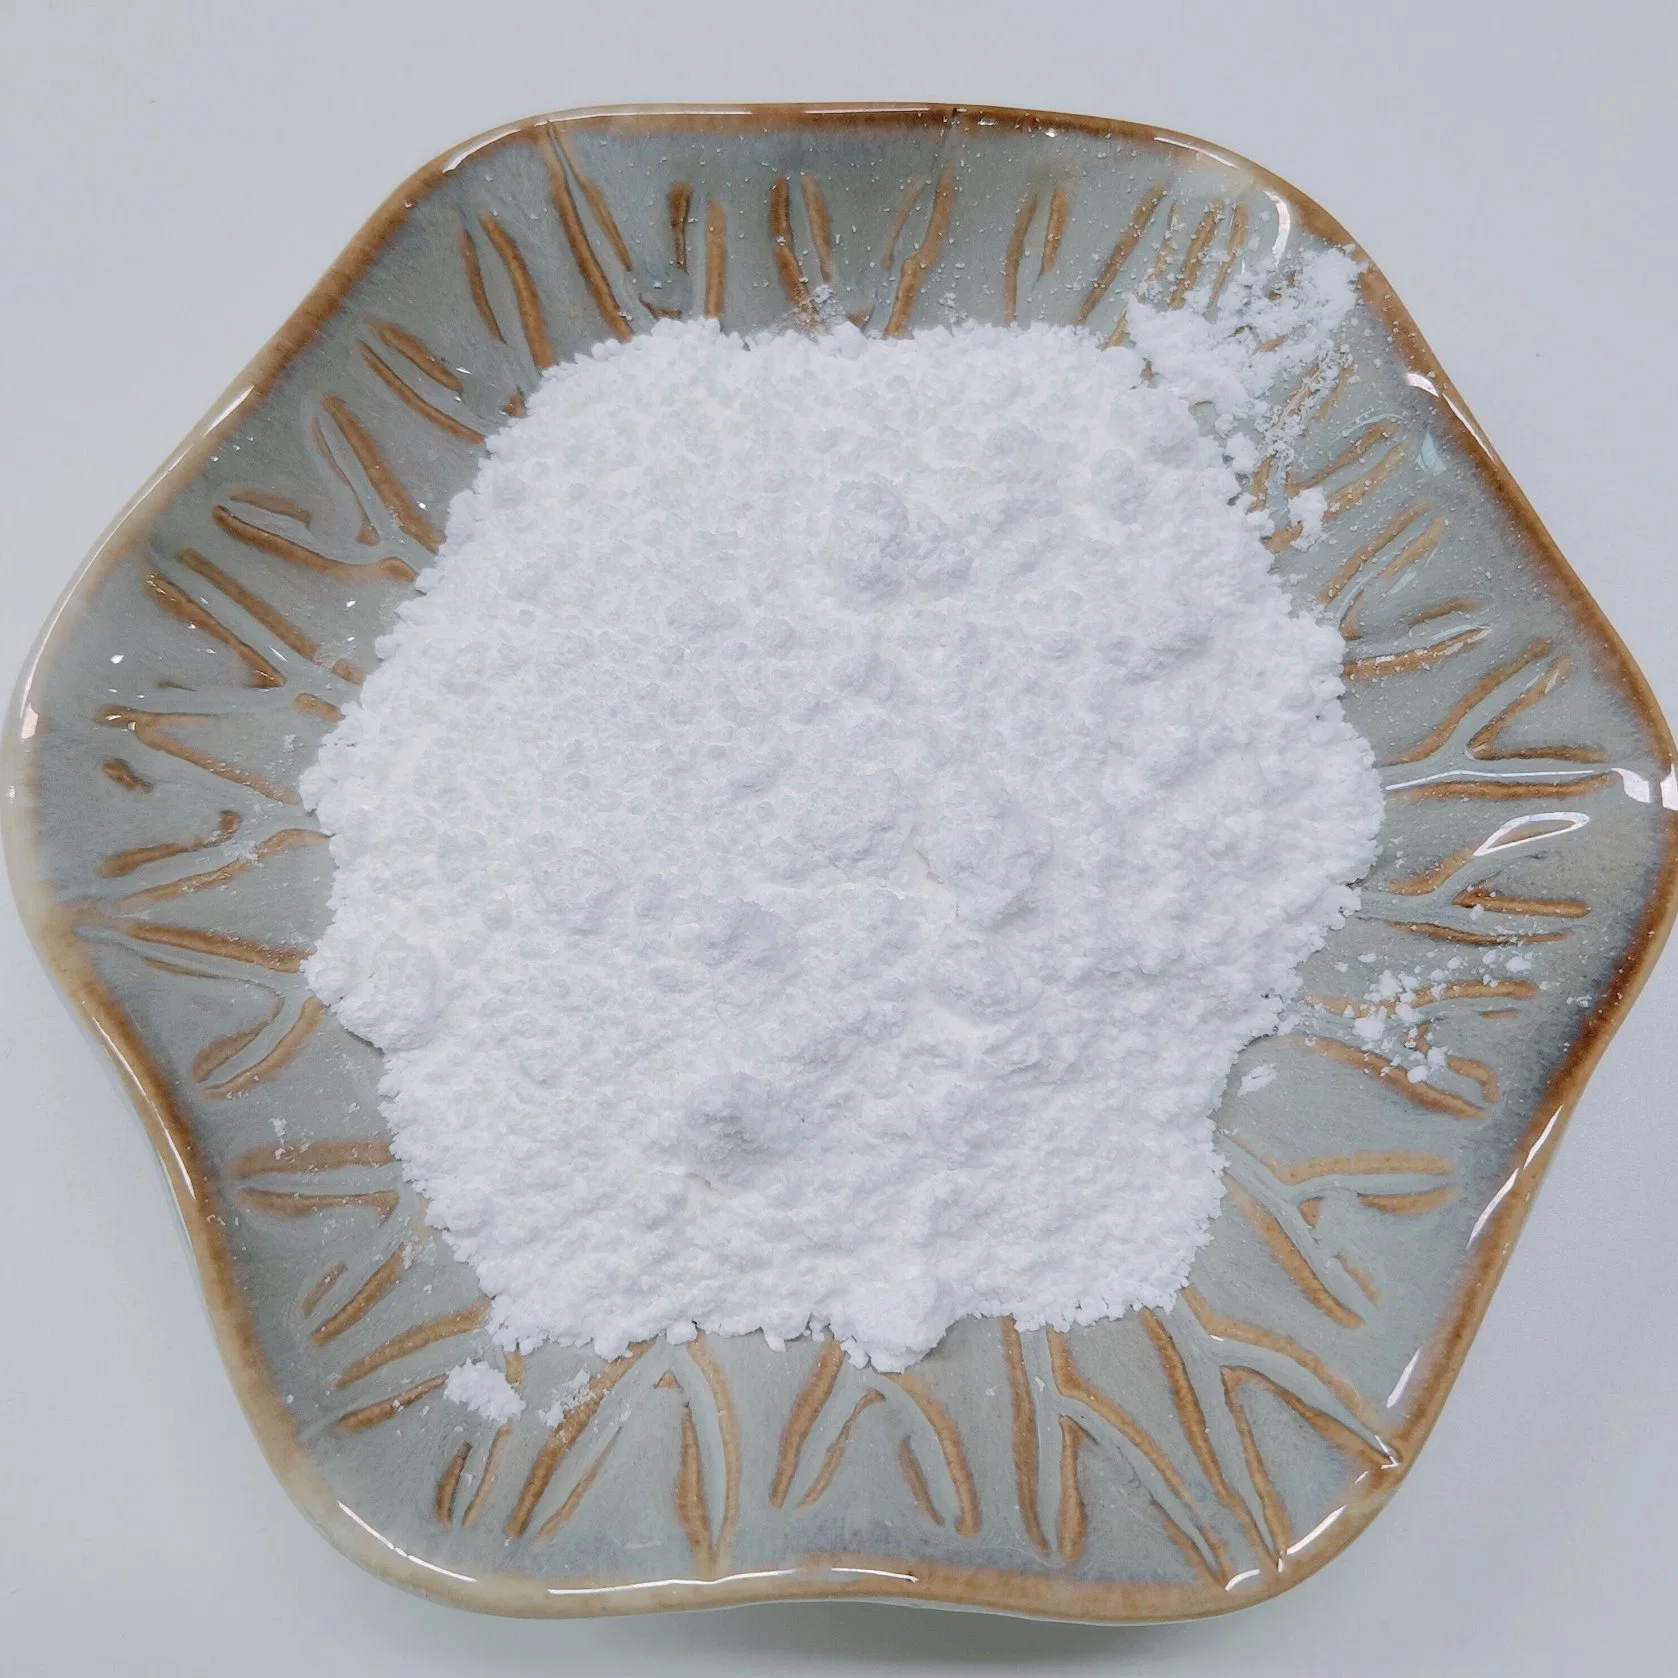 NSF-BPF matières premières pharmaceutiques Azithromycine en vrac